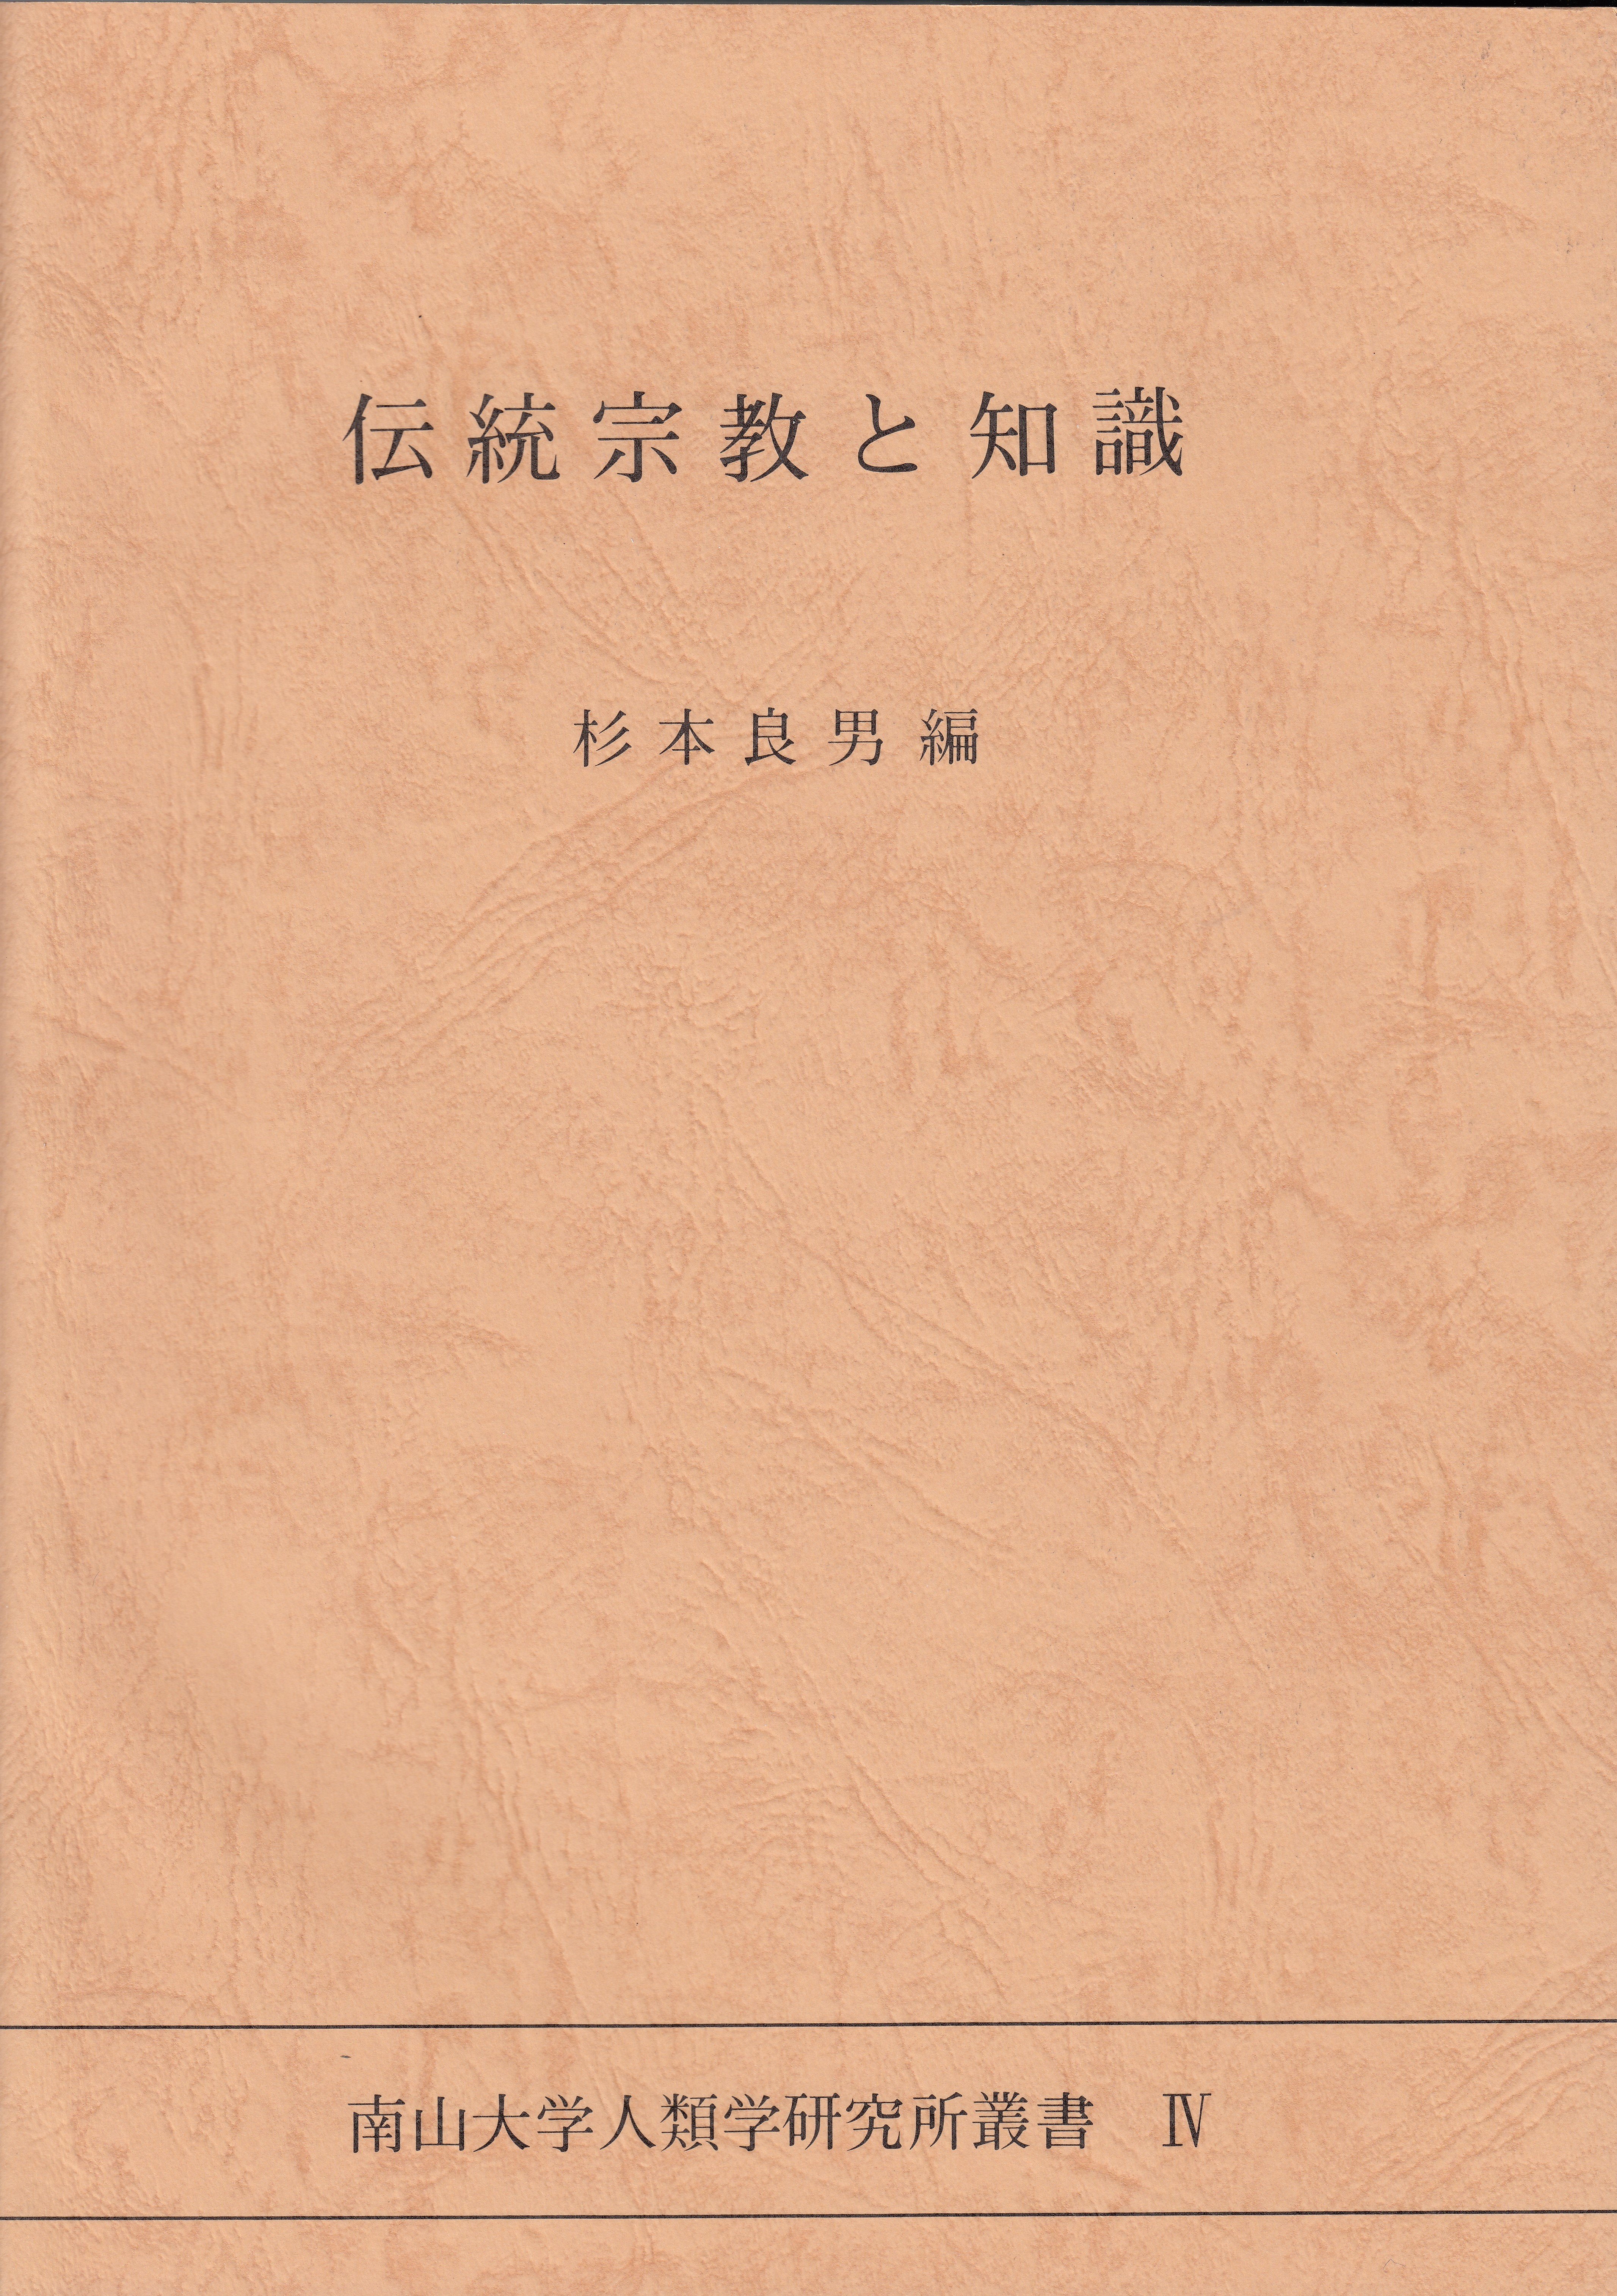 4.『伝統宗教と知識』杉本 良男編（1991）￥2,800